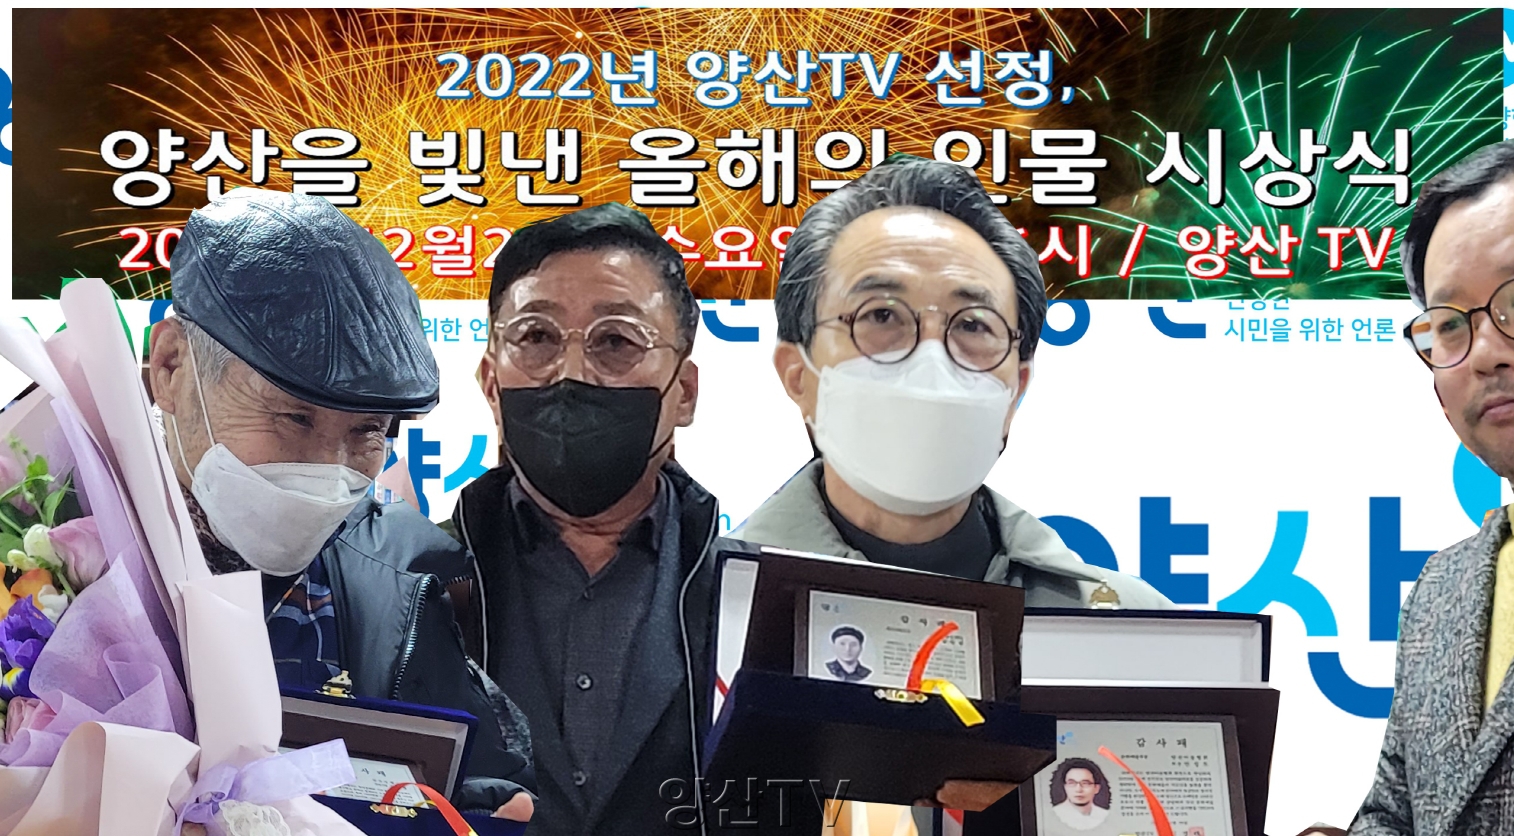 2022년 양산TV선정, 양산을 빛낸 올해의 인물 시상식